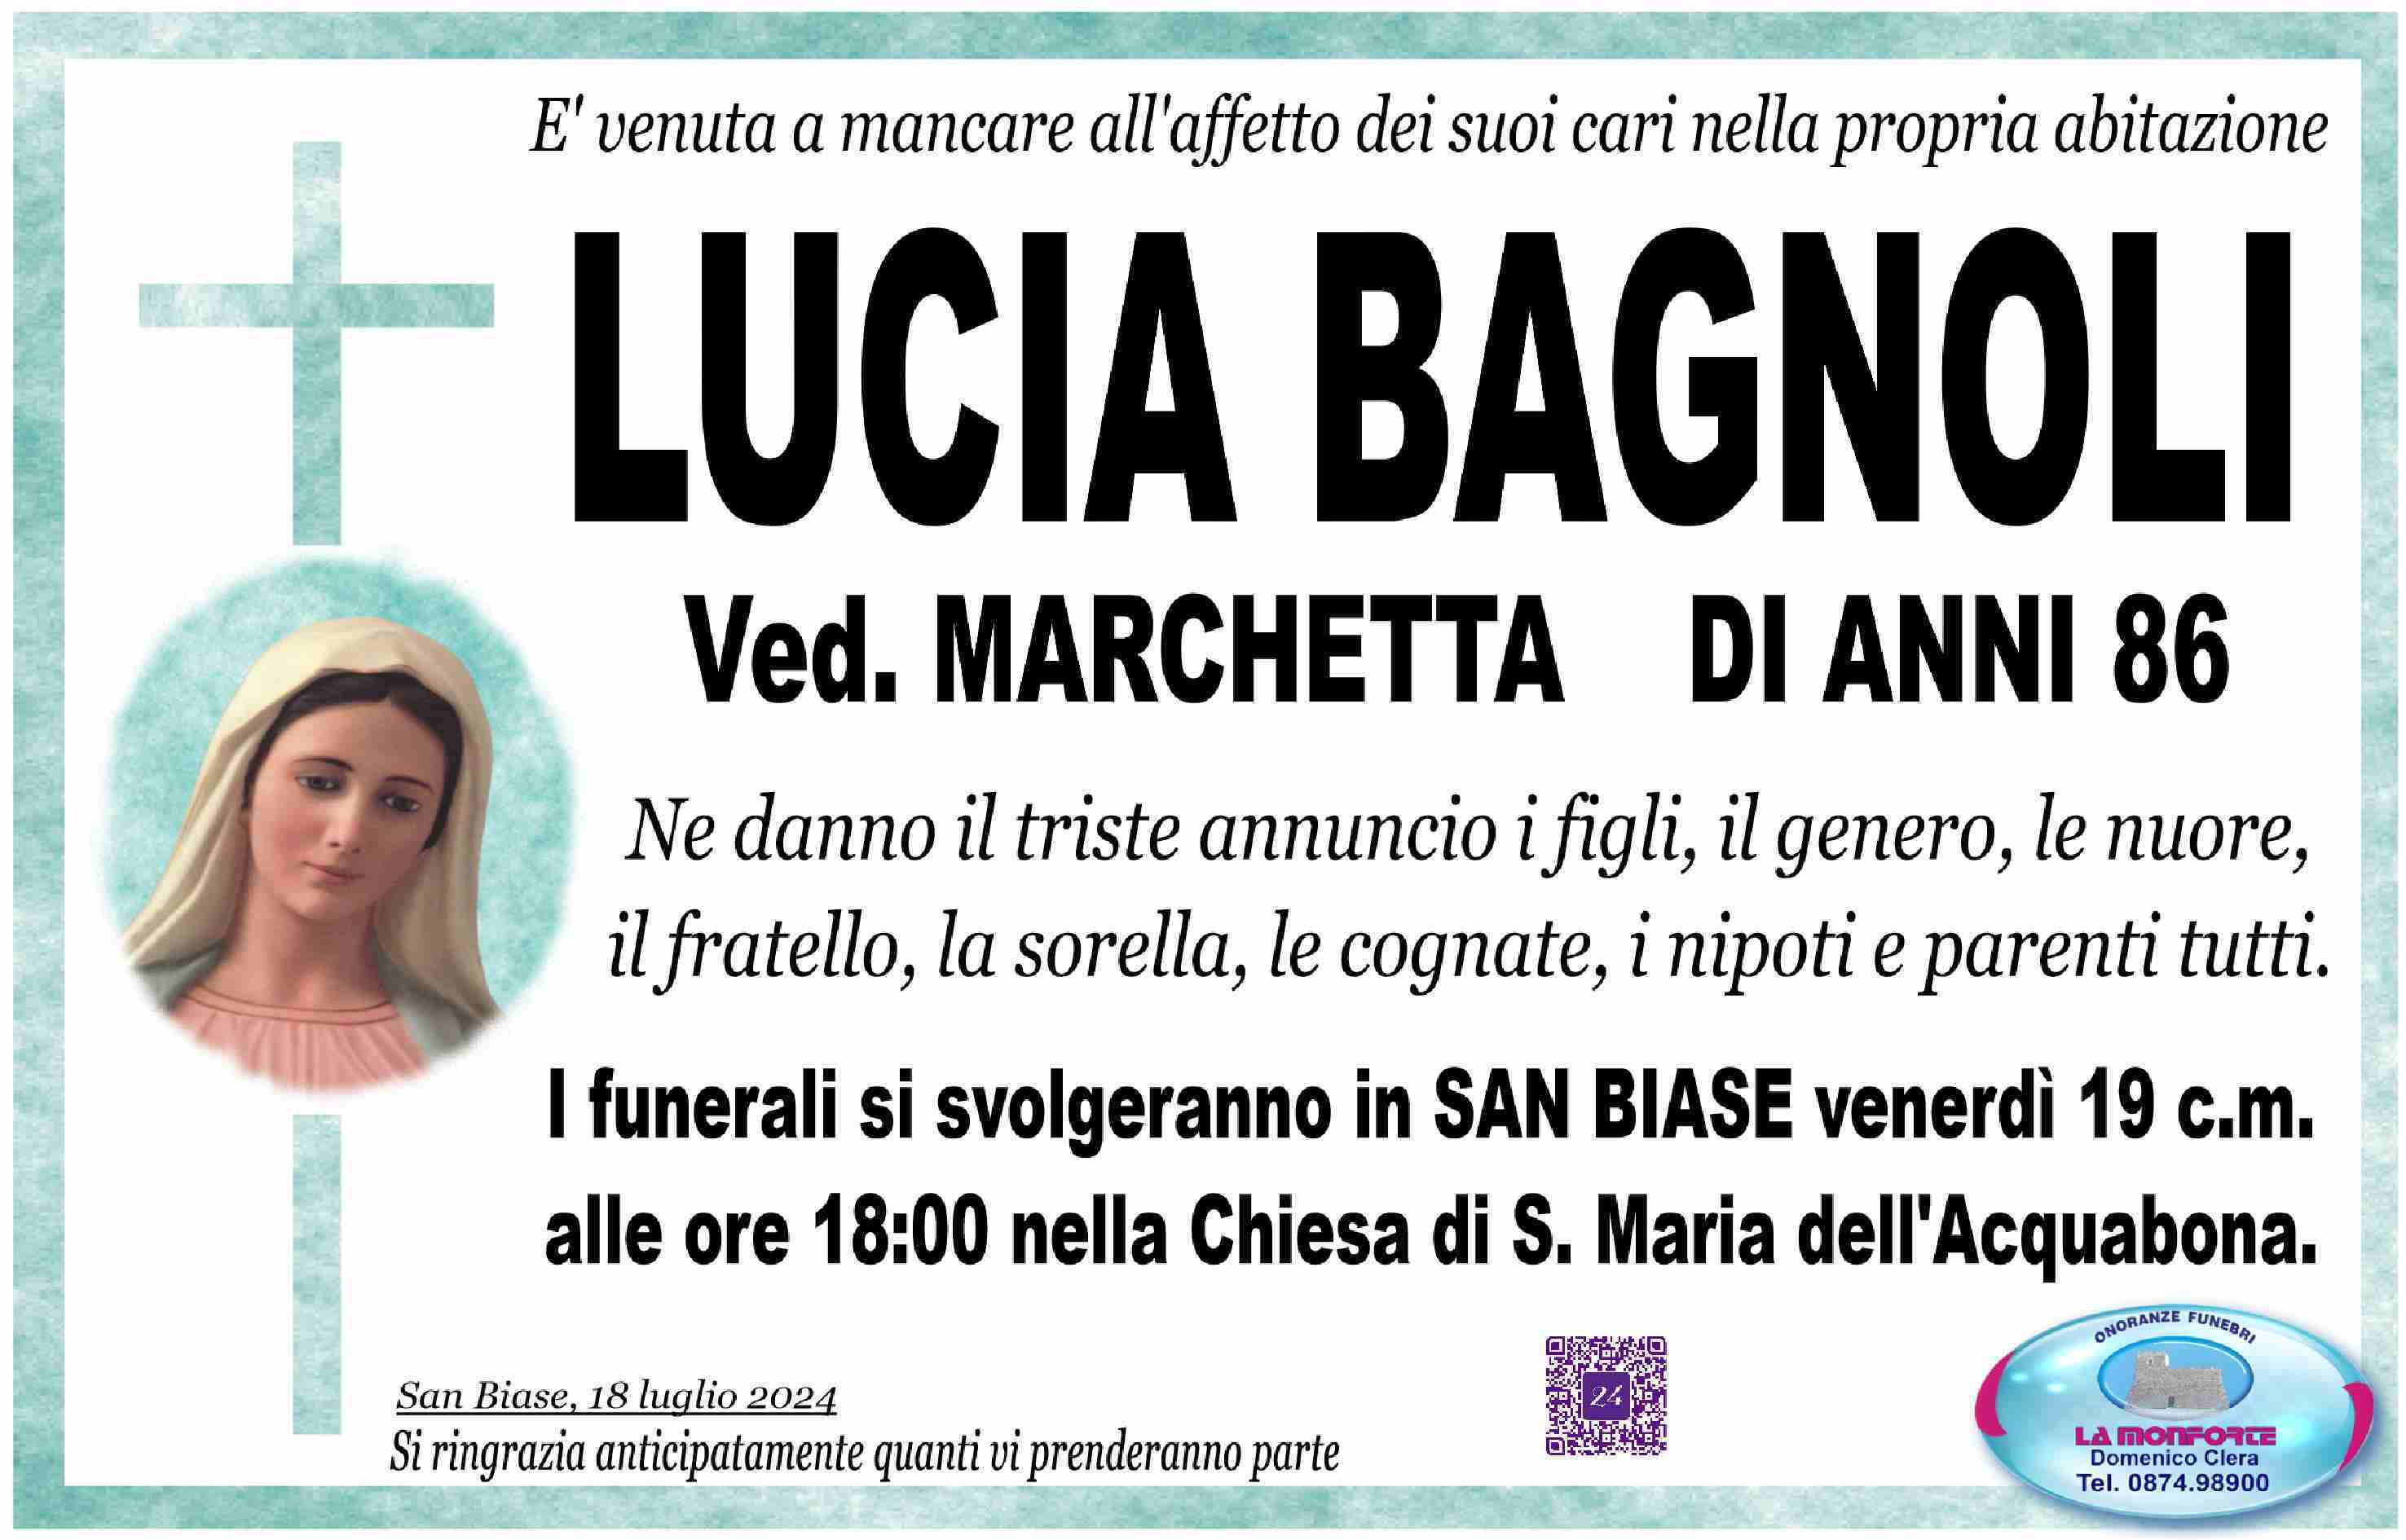 Lucia Bagnoli